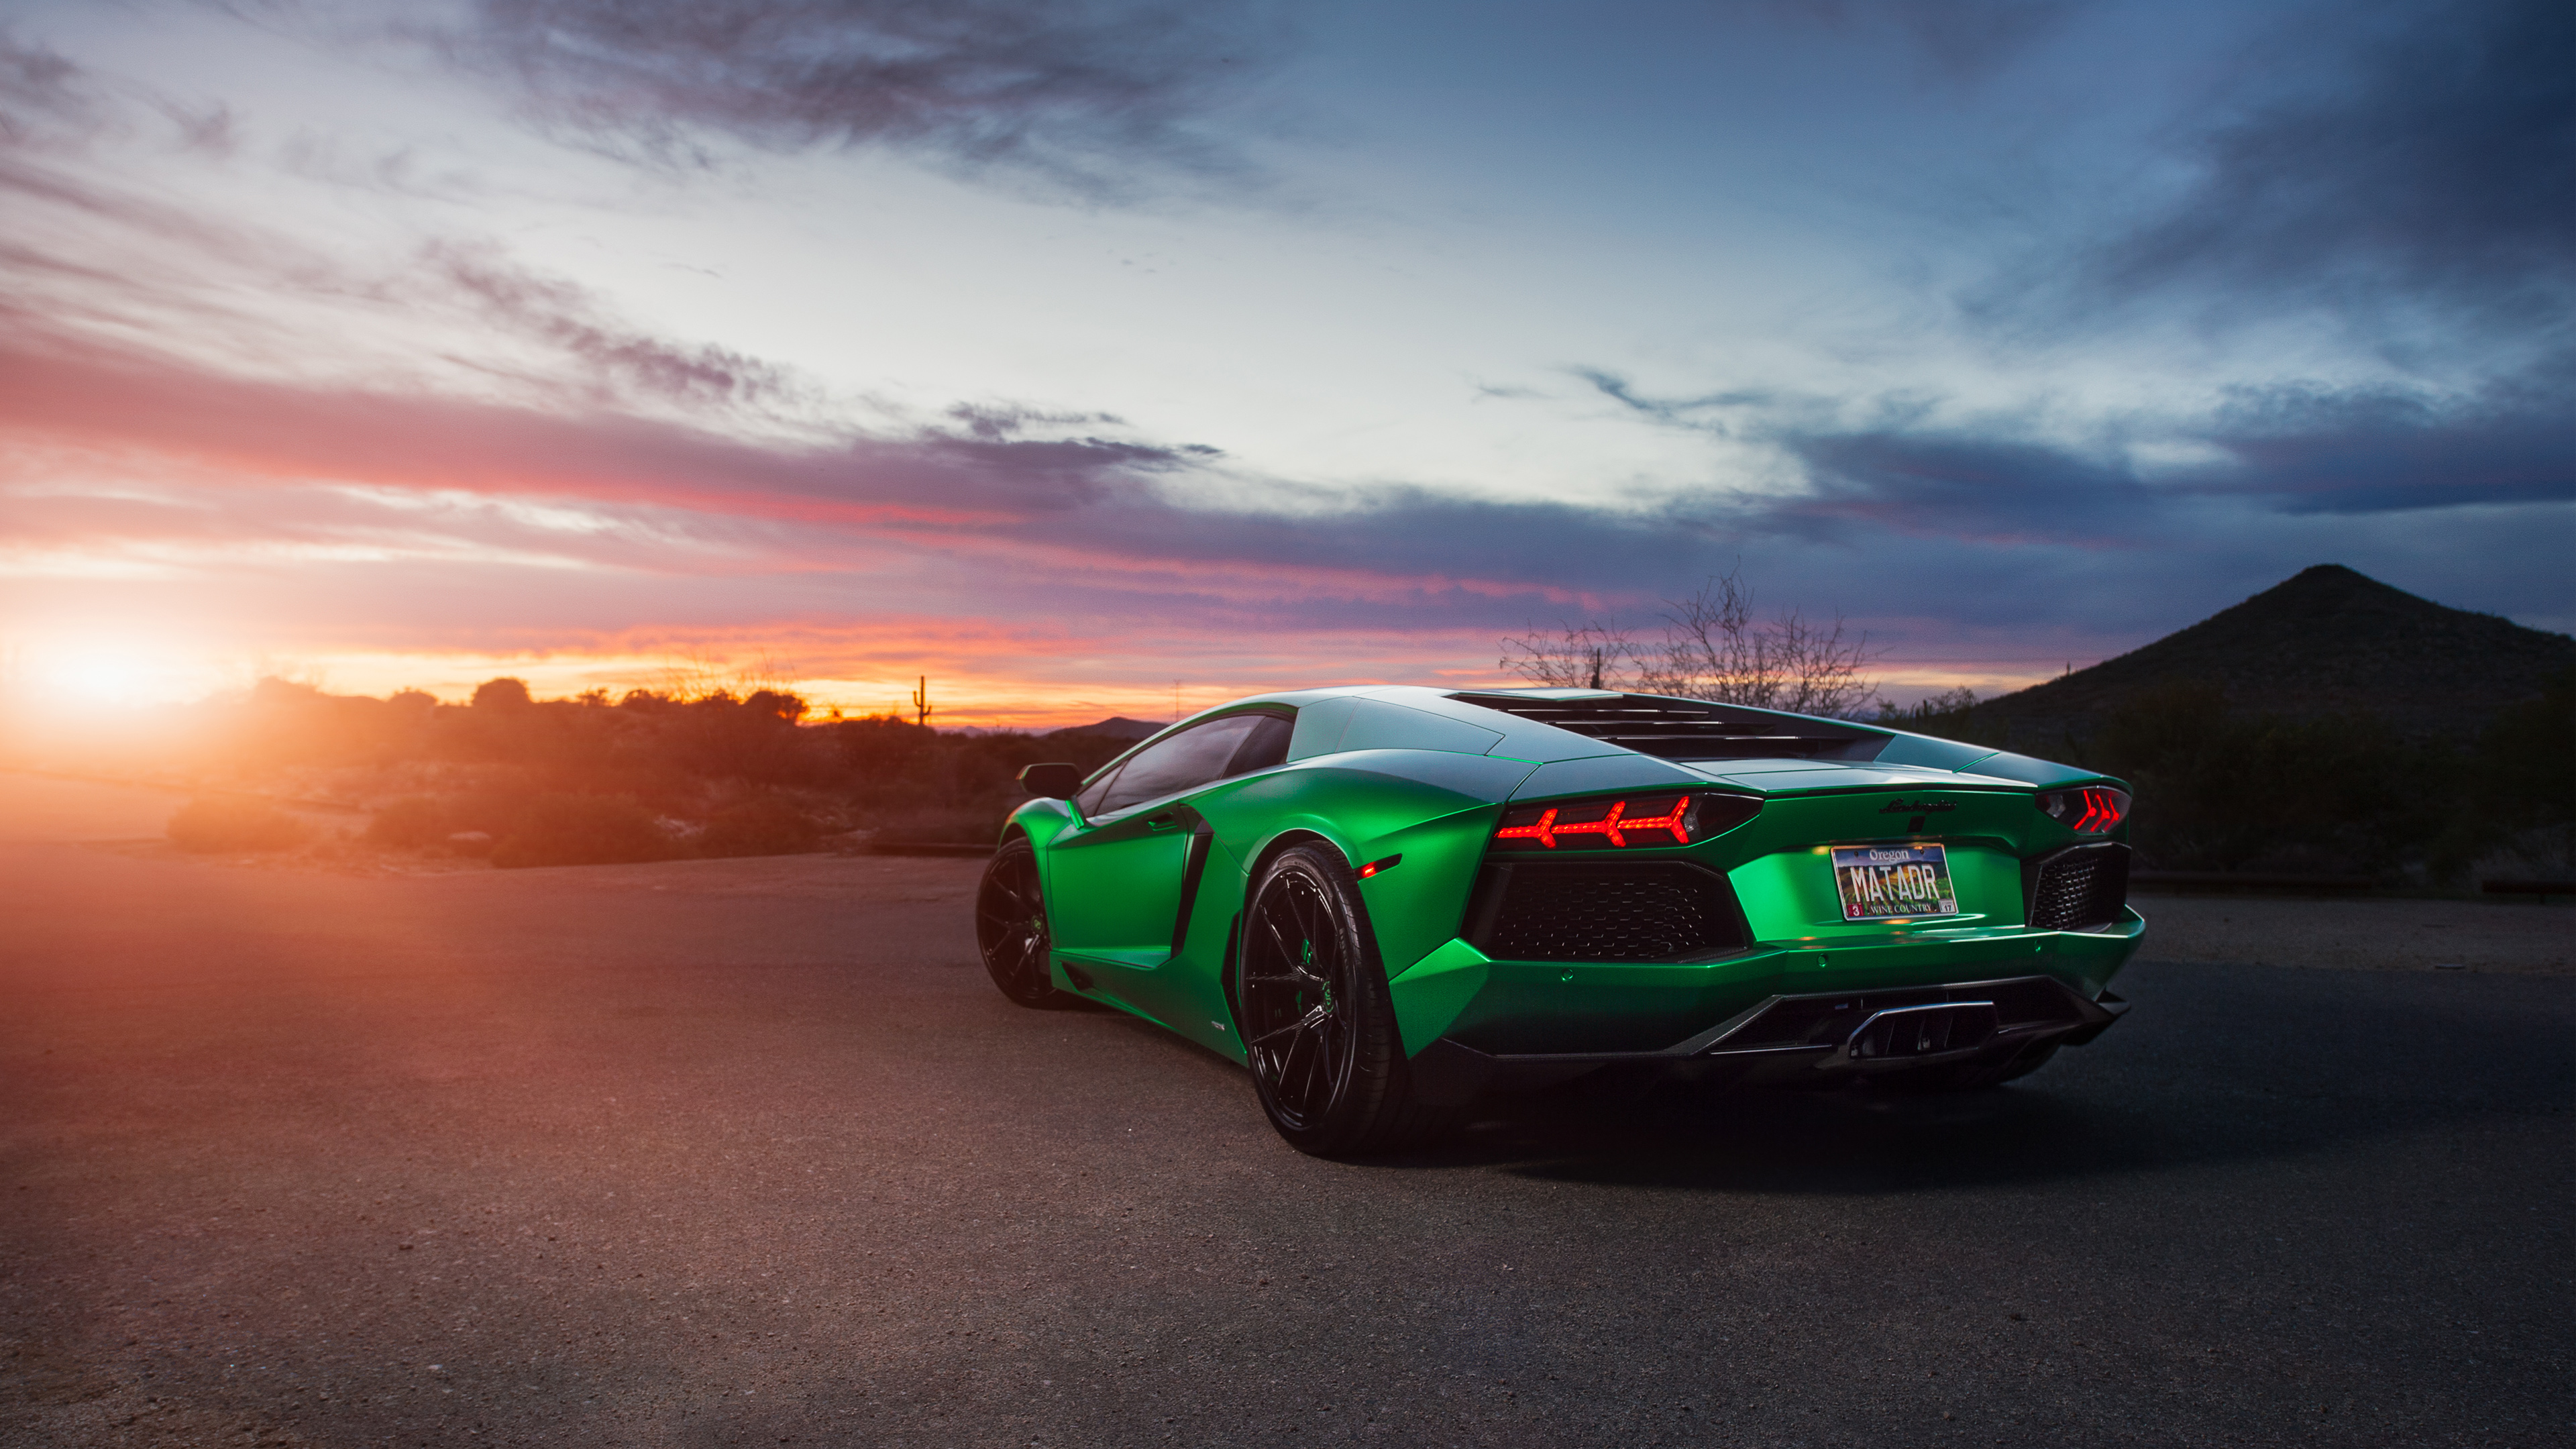 Lamborghini Car Hd Image Download